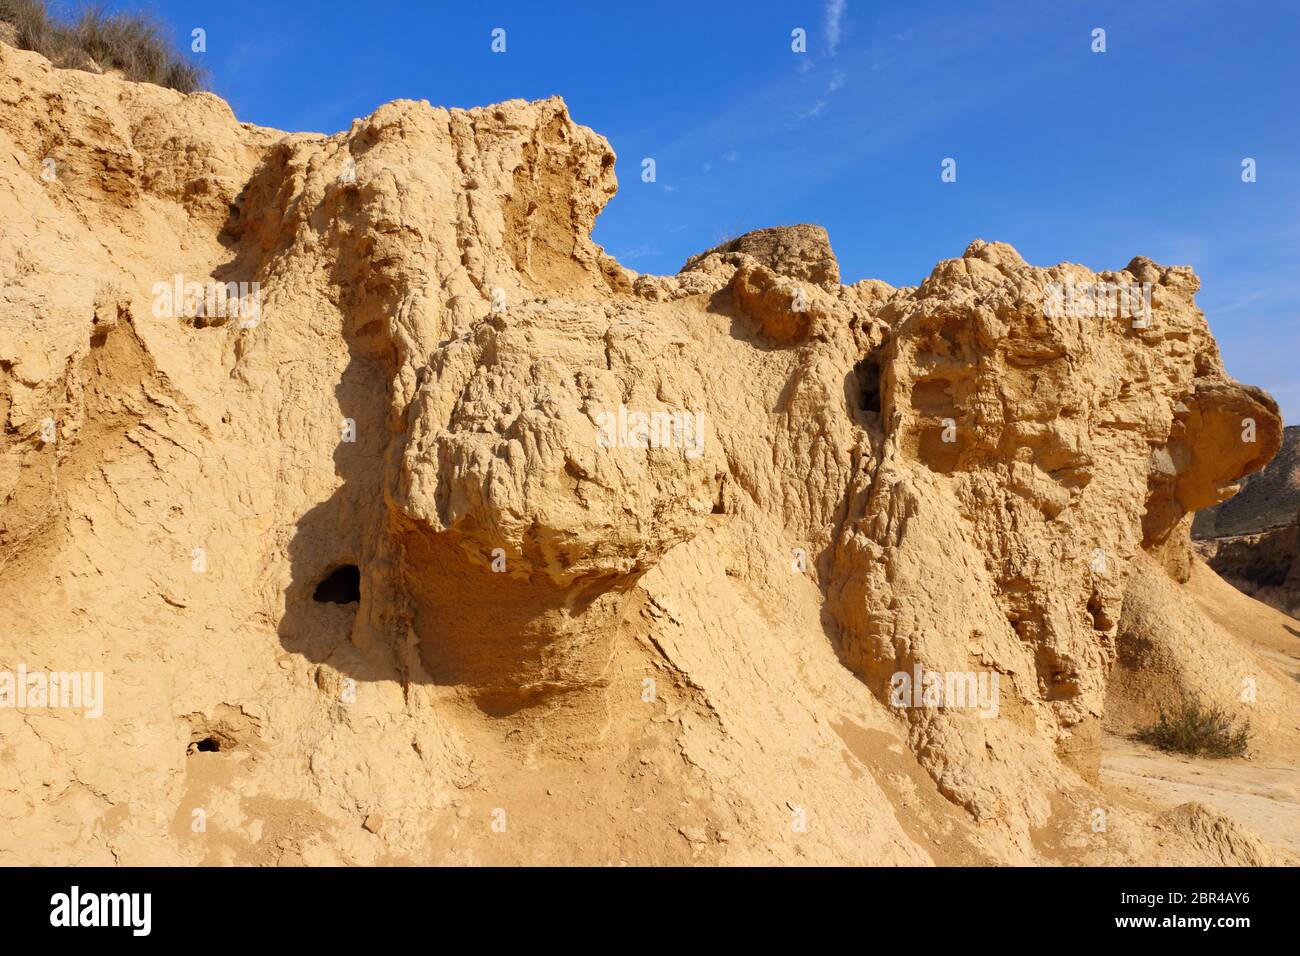 Gros plan des sédiments et des caractéristiques érosionnelles dans la région naturelle du semi-désert de Bardenas Reales, Réserve de biosphère de l'UNESCO, Navarre, Espagne Banque D'Images